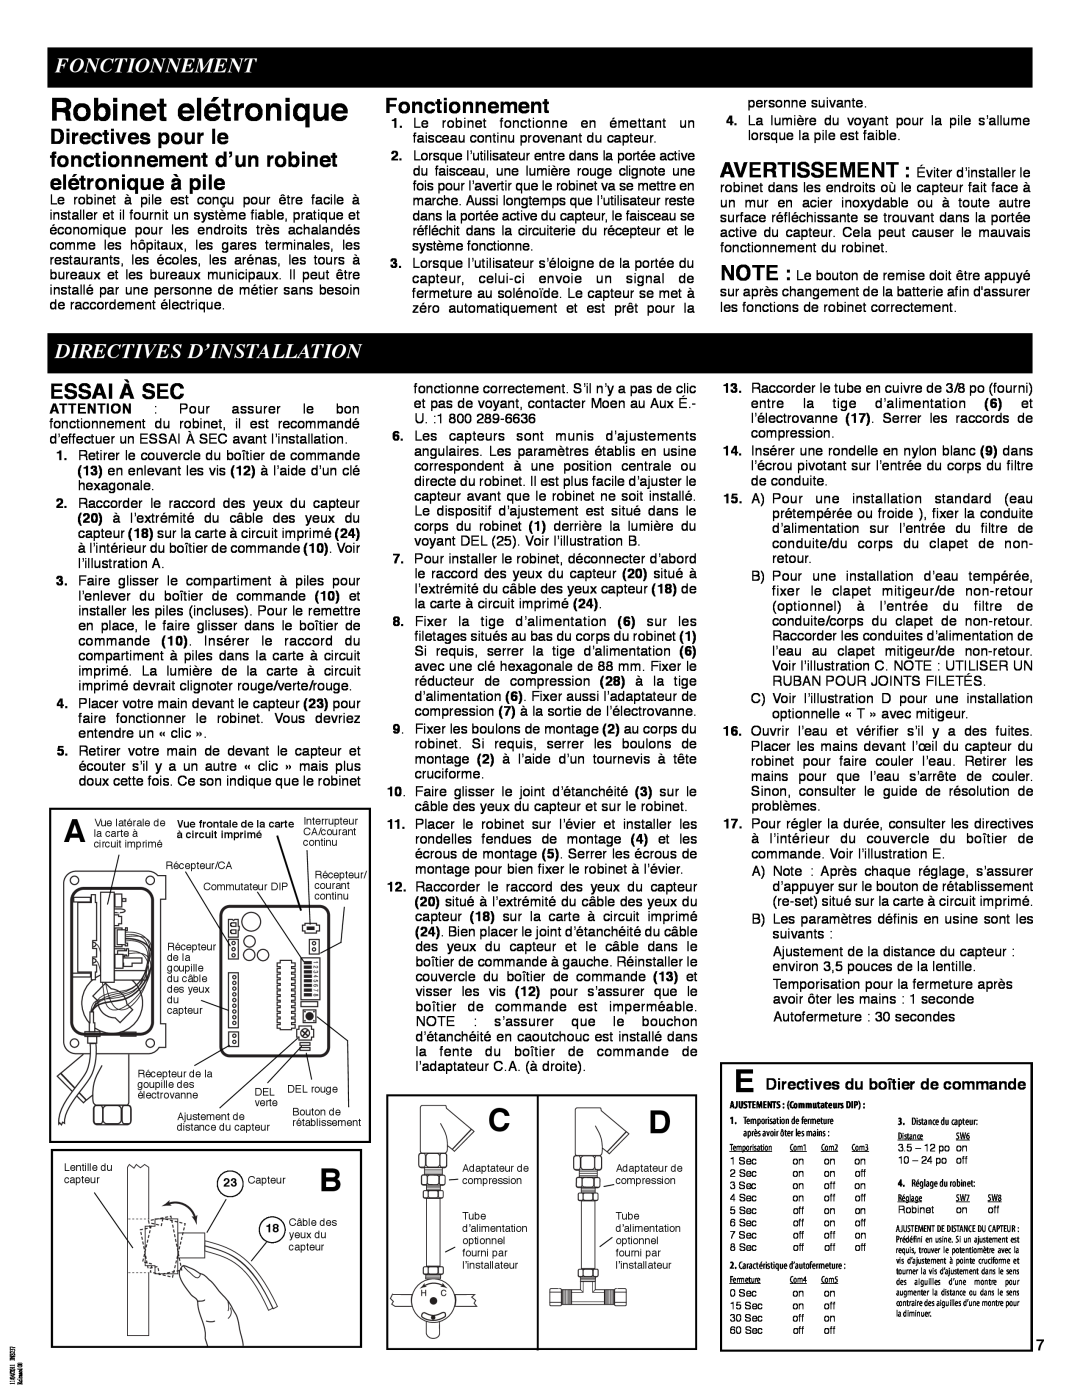 Moen 8301 manual Robinet elétronique, Fonctionnement, Directives D’Installation, Essai À Sec 